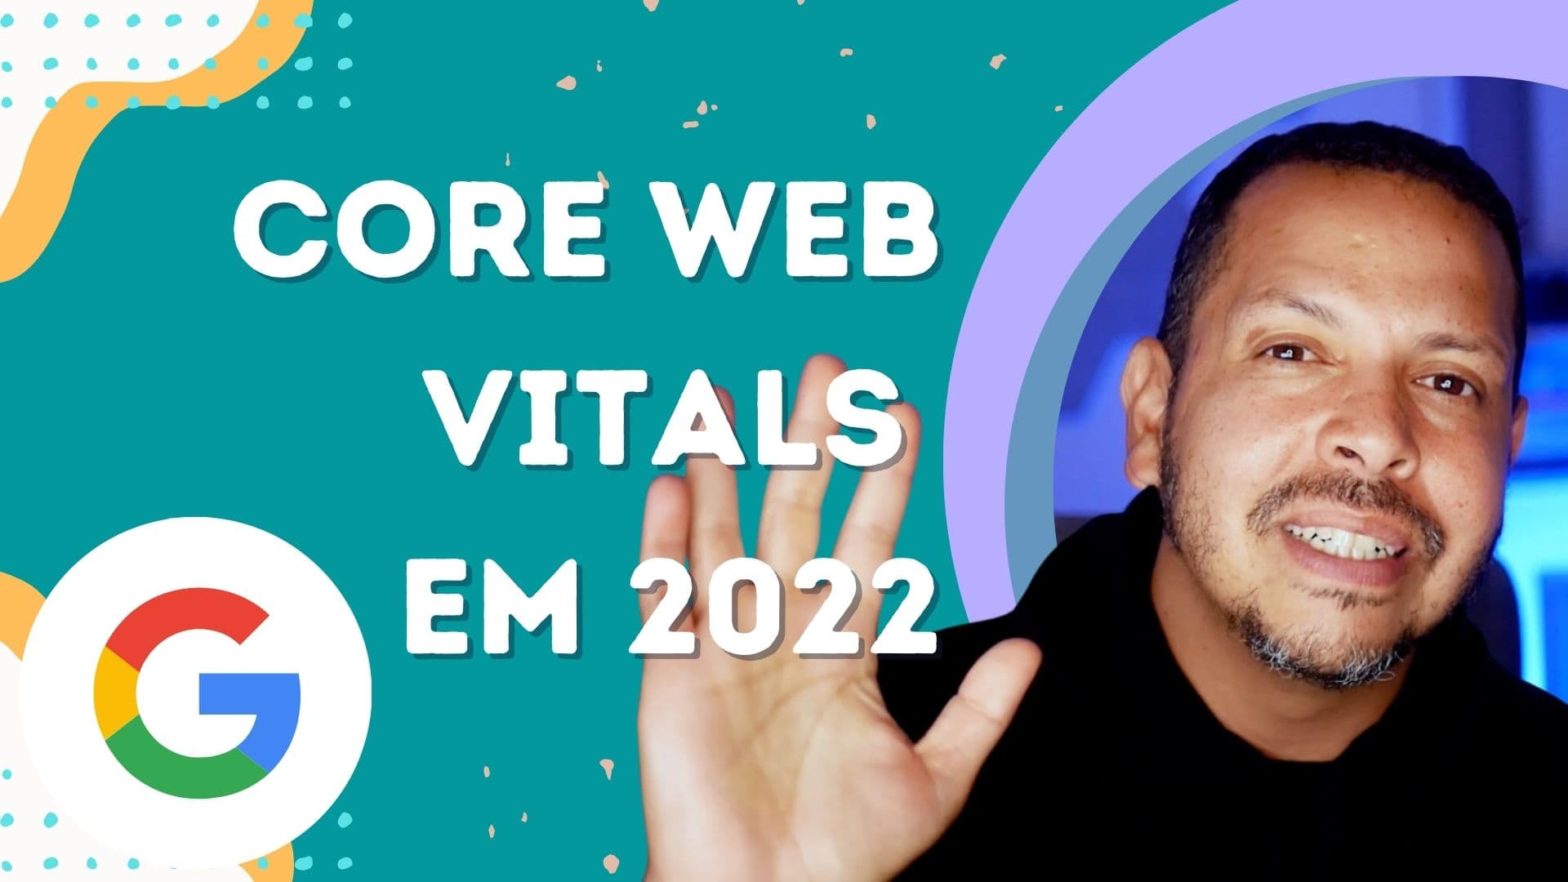 Core web vitals em 2022